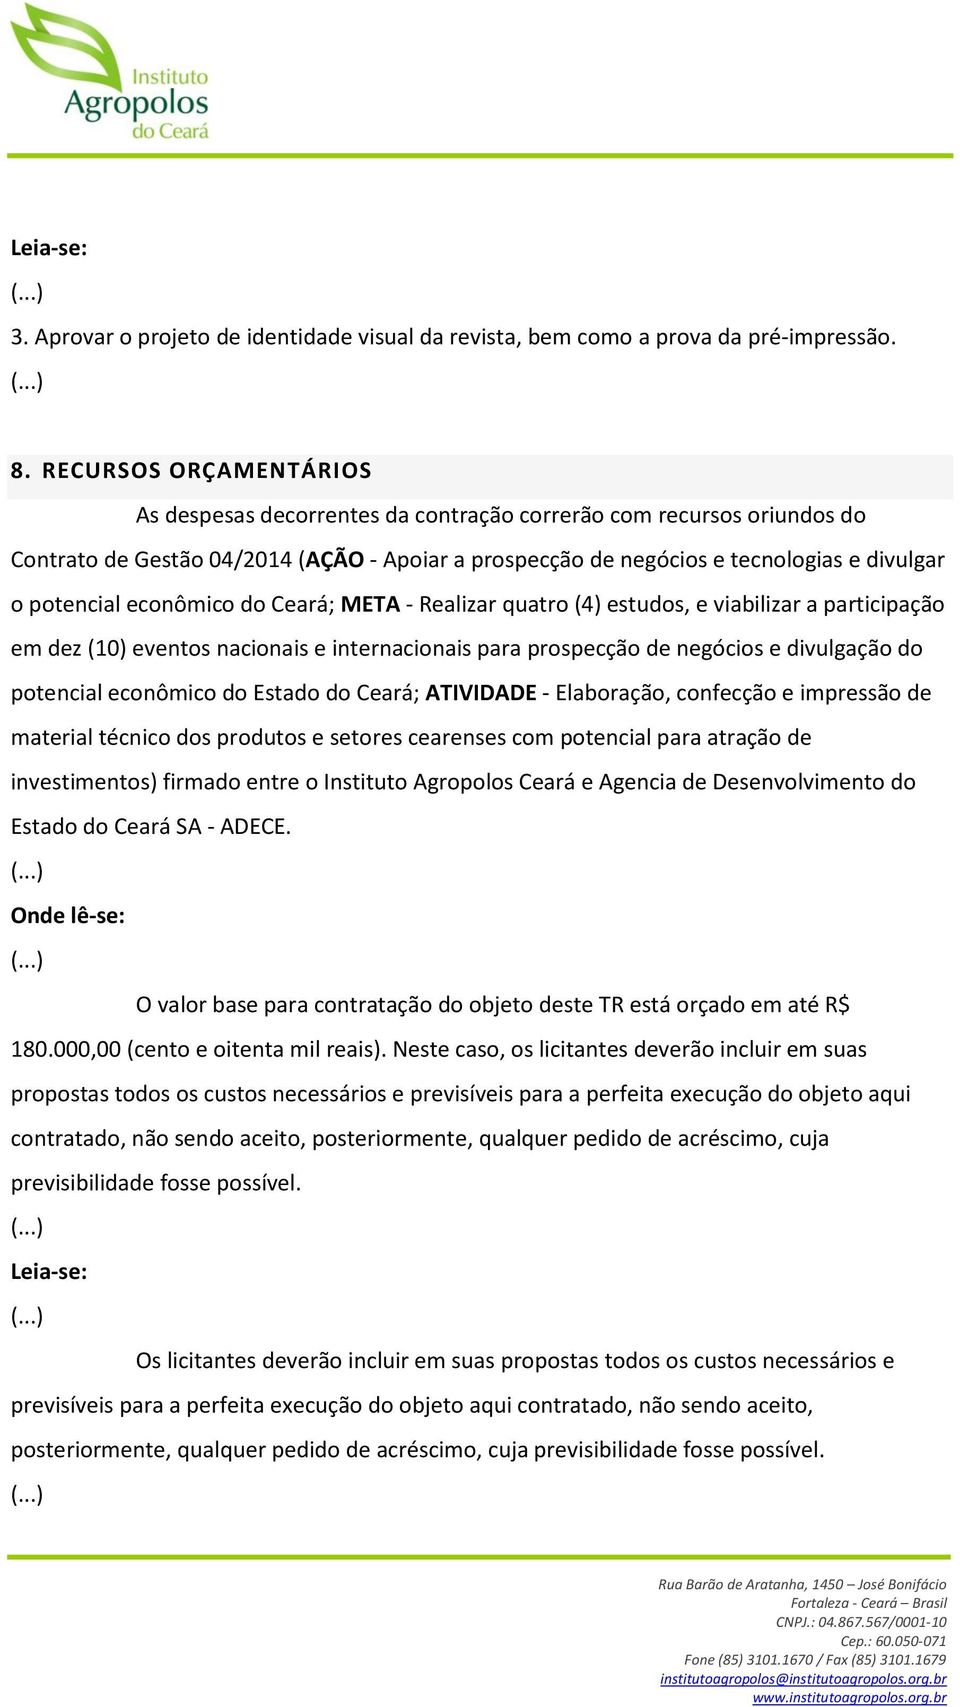 econômico do Ceará; META - Realizar quatro (4) estudos, e viabilizar a participação em dez (10) eventos nacionais e internacionais para prospecção de negócios e divulgação do potencial econômico do